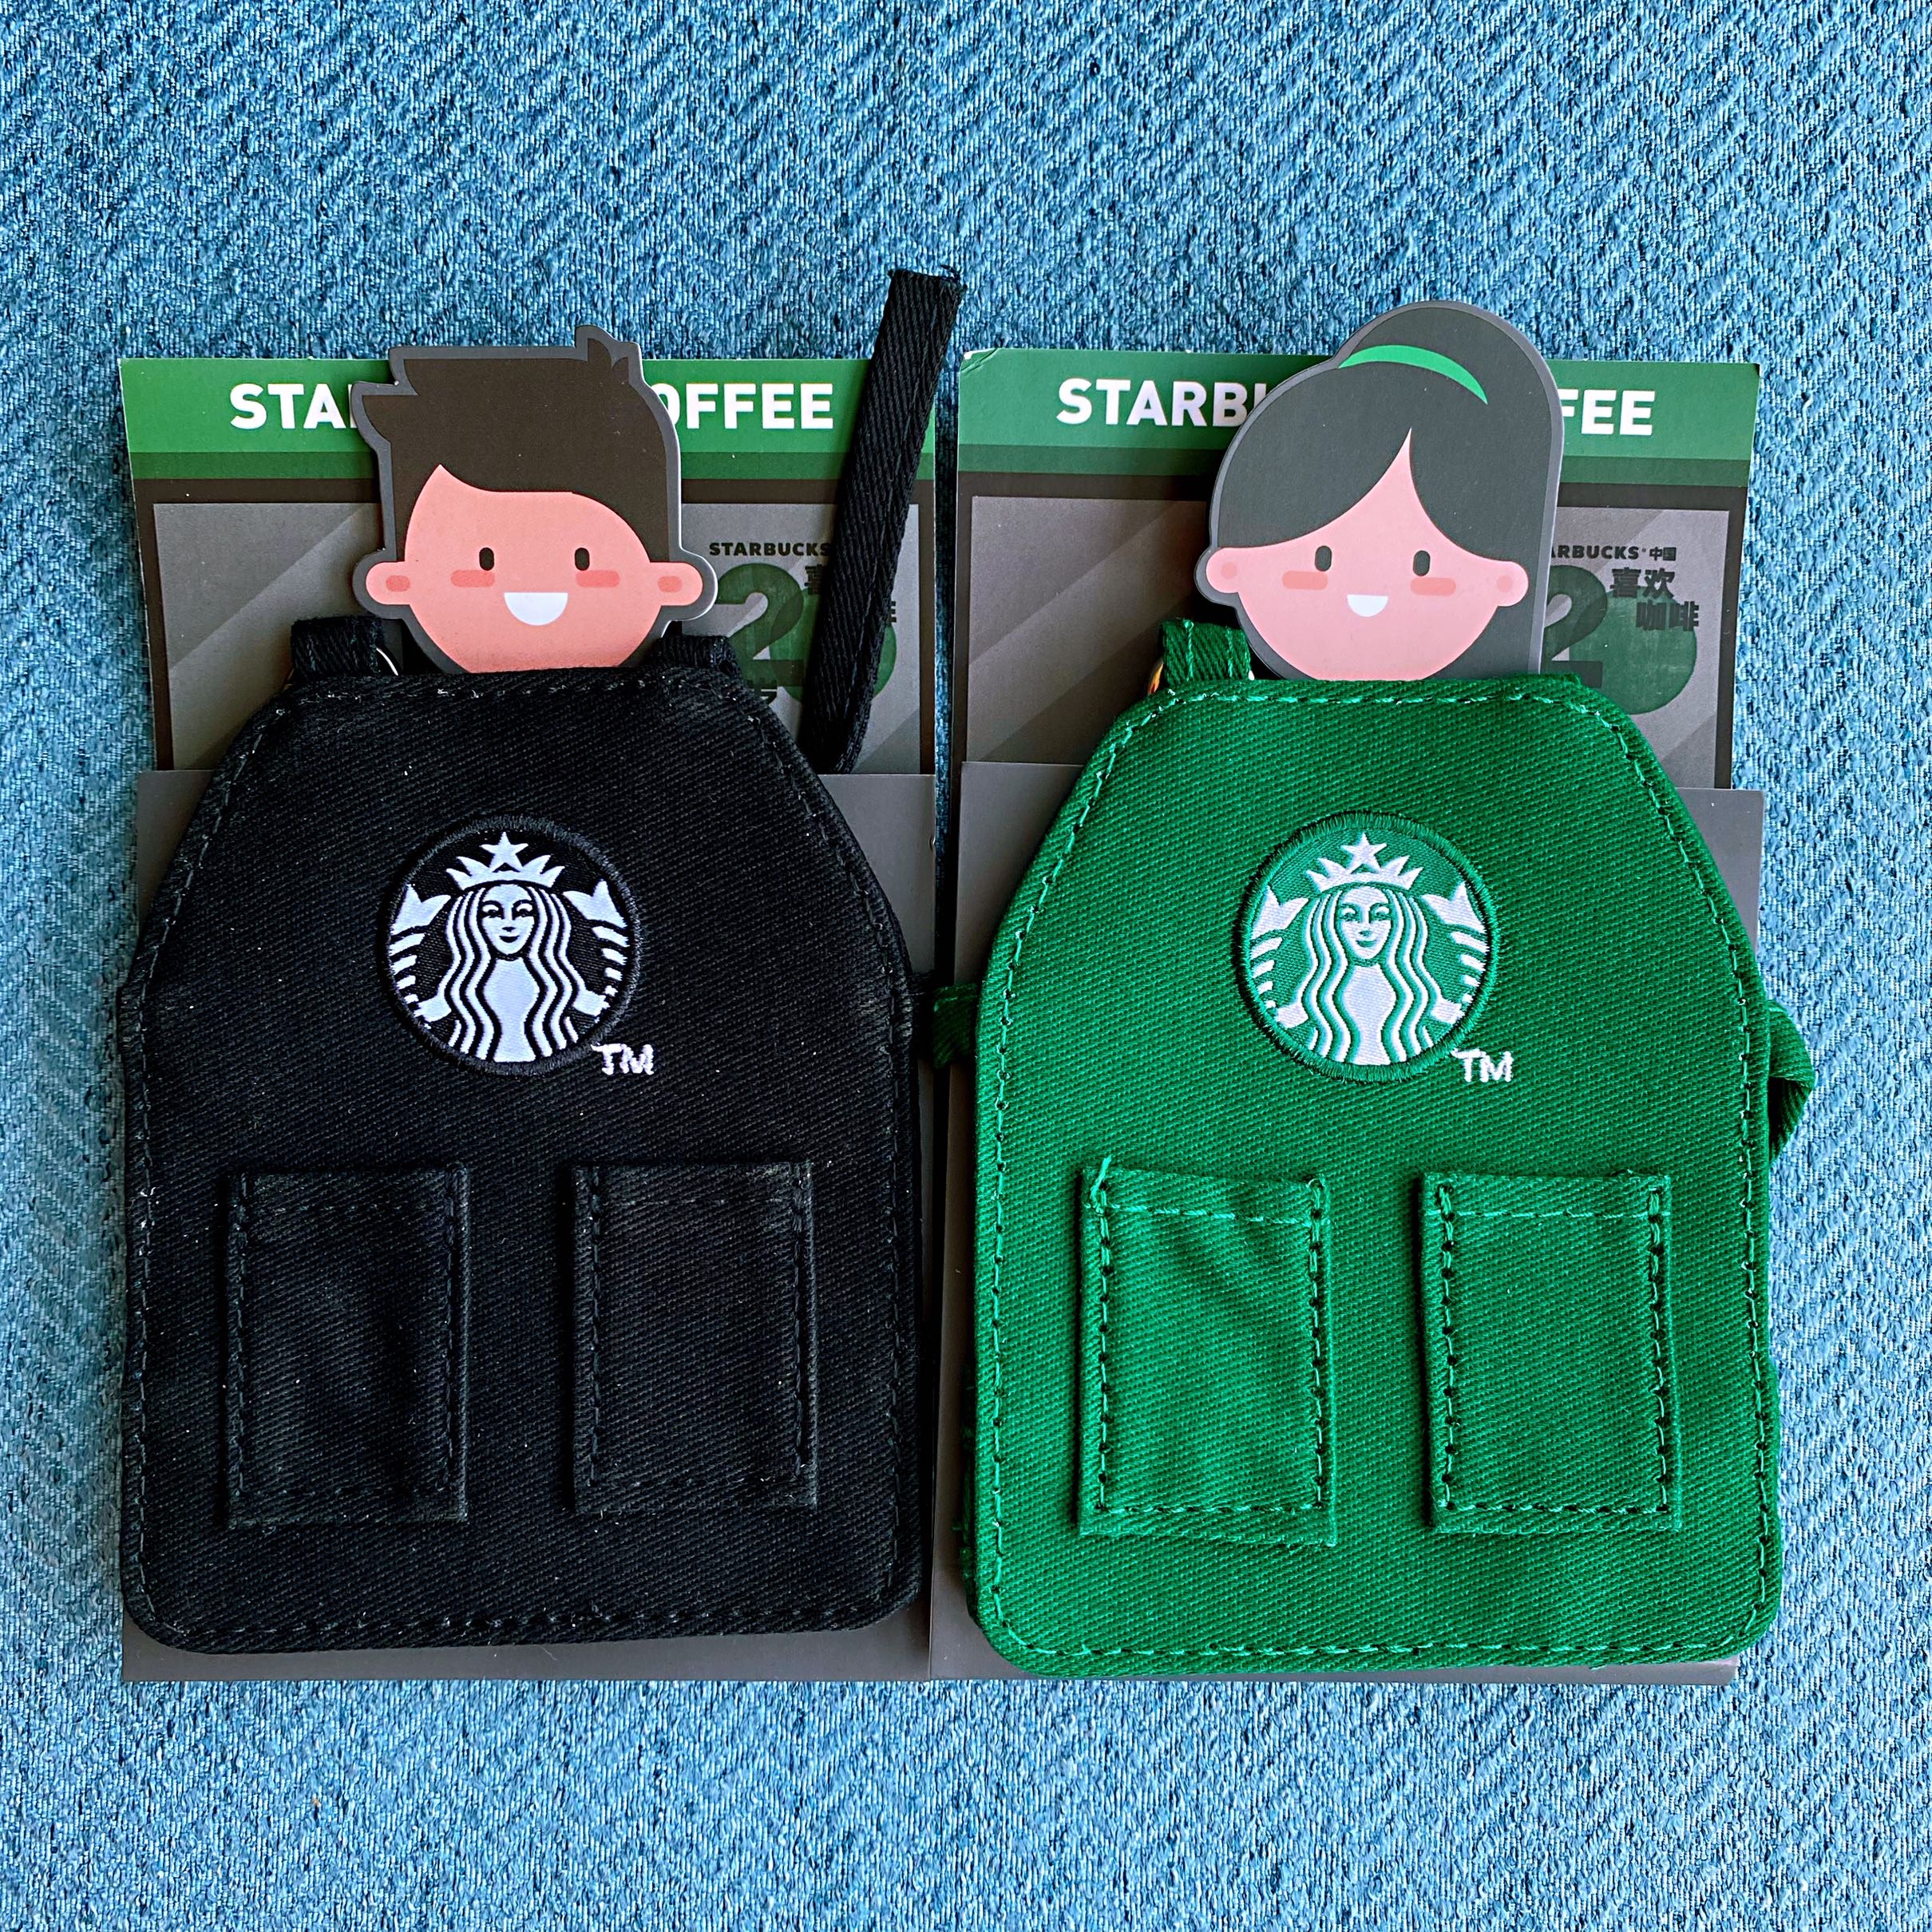 Startbuck Cửa Hàng Chính Thức Starbuck Cốc Có Ống Hút 25Cm Siêu Dài Ống Hút  Thủy Tinh Sáng Tạo Gấu Phim Hoạt Hình Mũ Cói Nút Cắm Chống Bụi Tumbler  Starbuck Ống